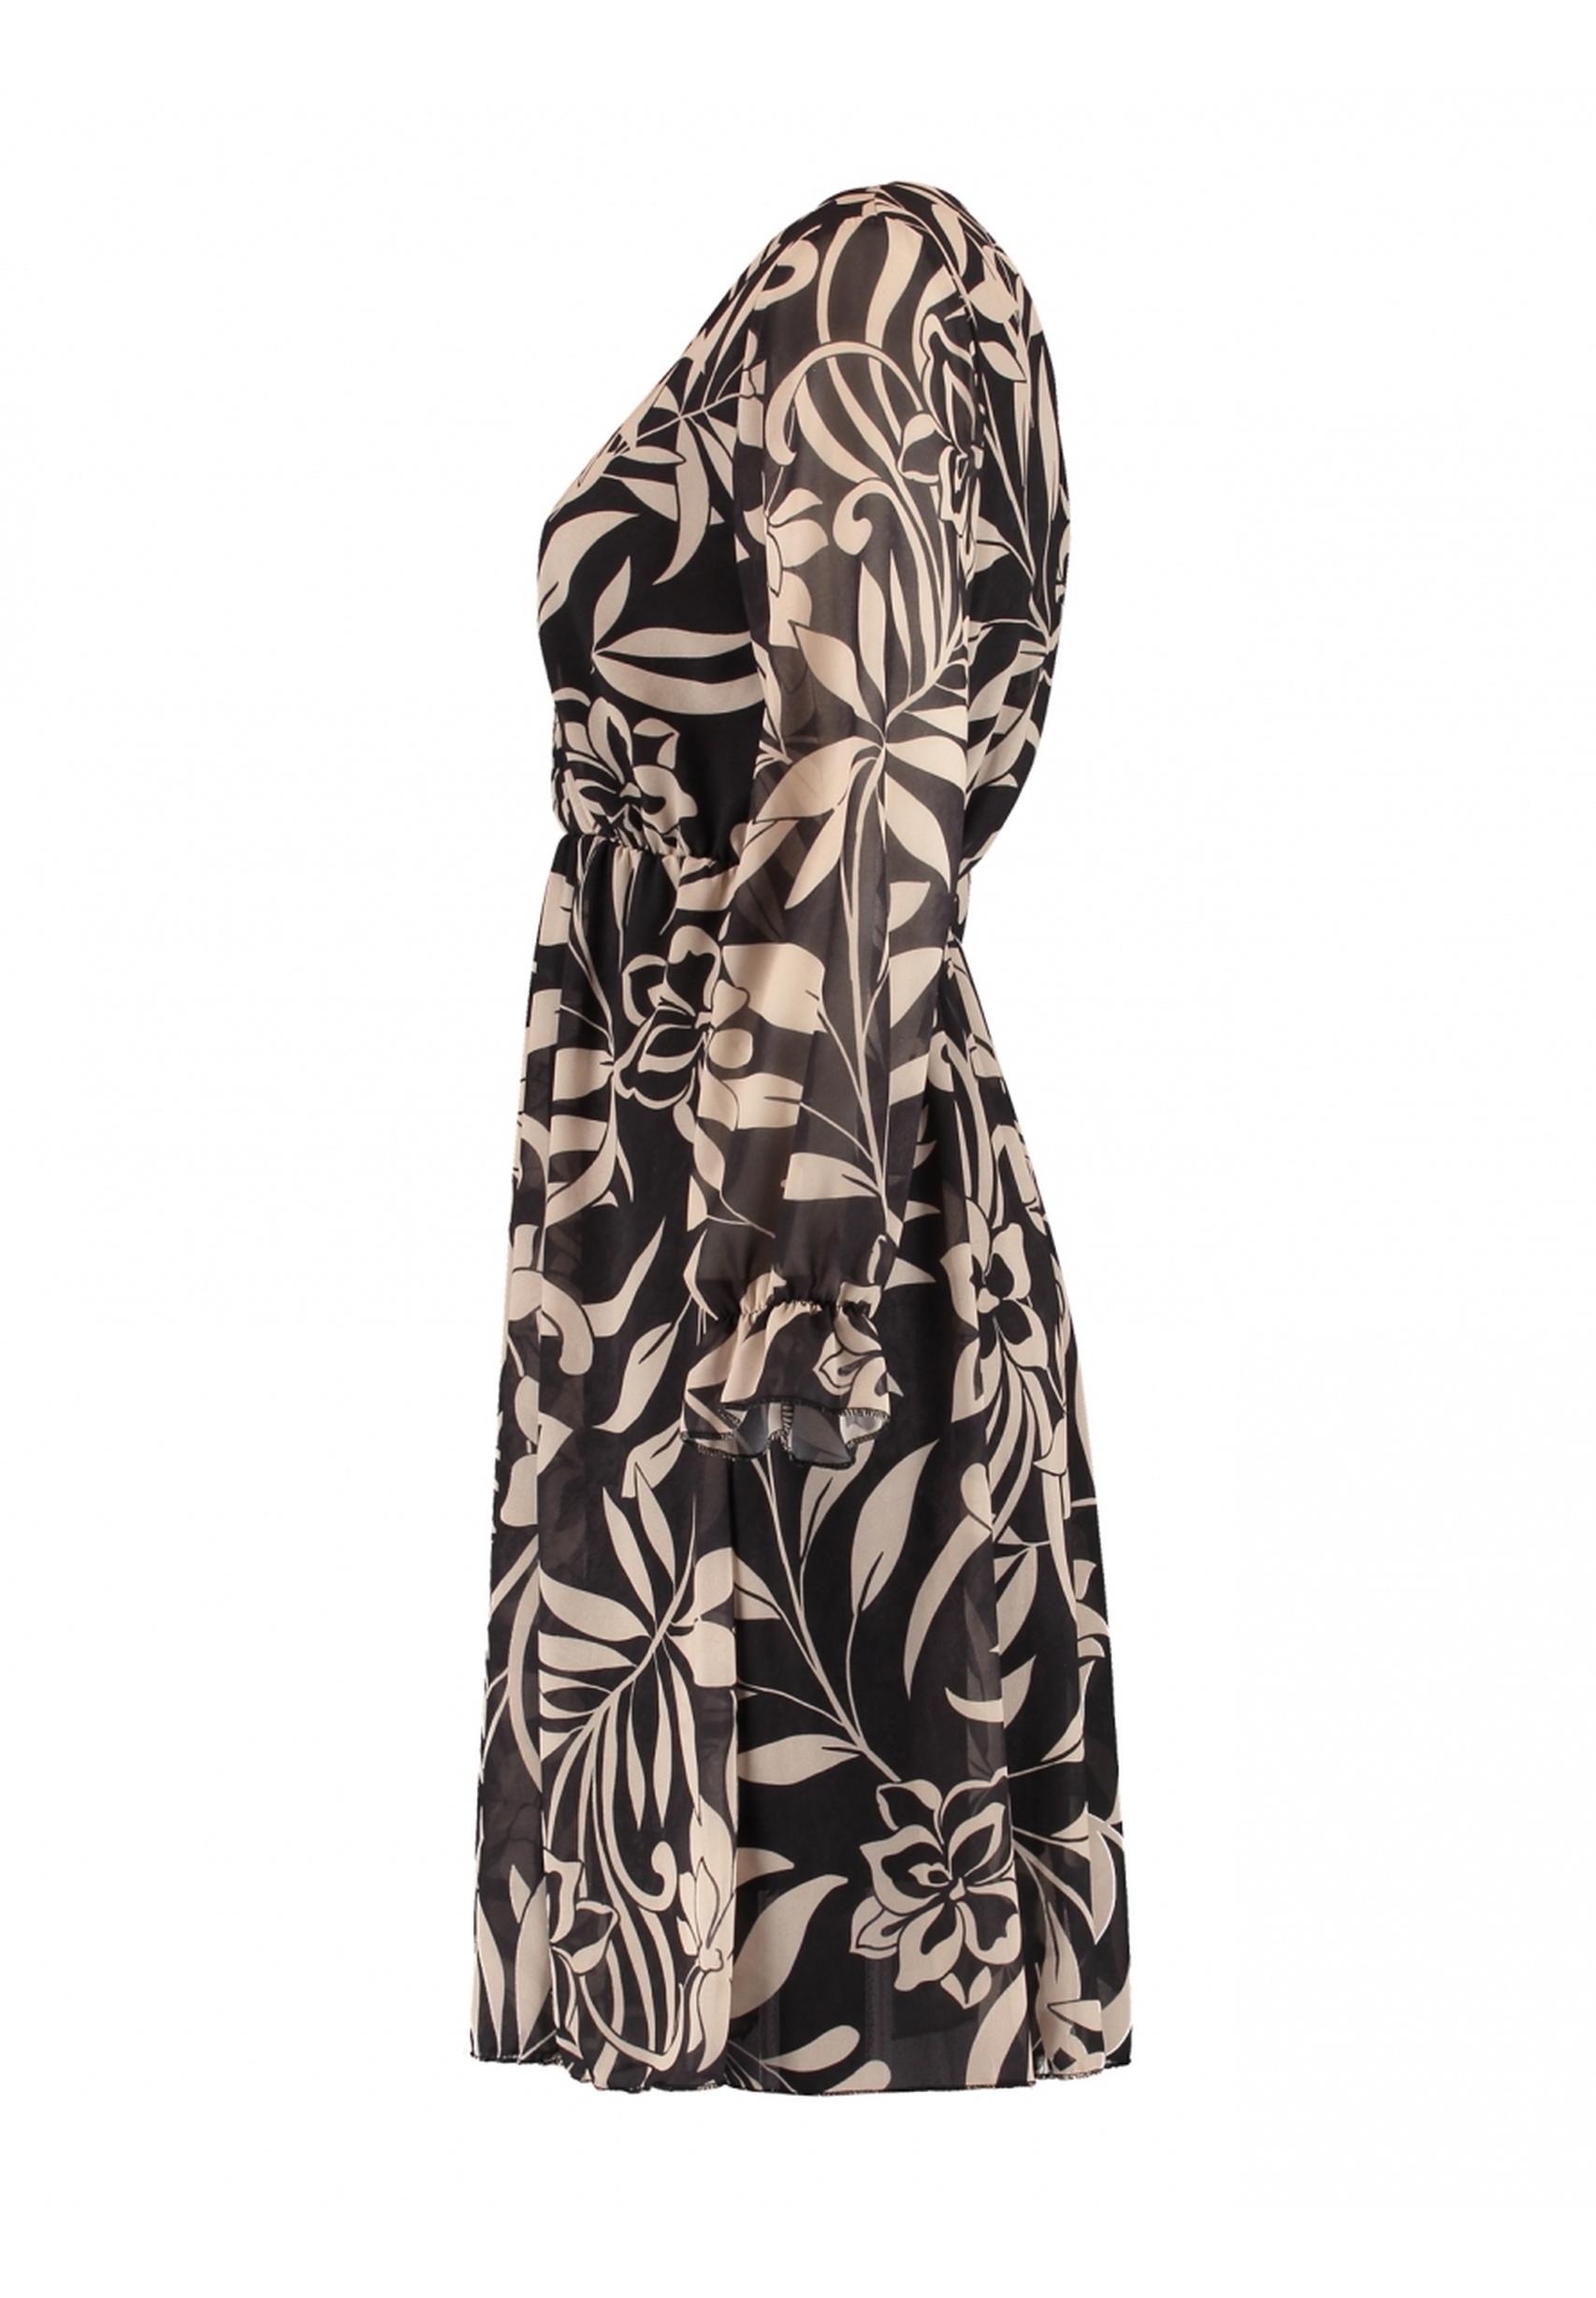 Modisches Kleid aus der Kollektion von Zabaione in schwarz gemustert  BK-108-545